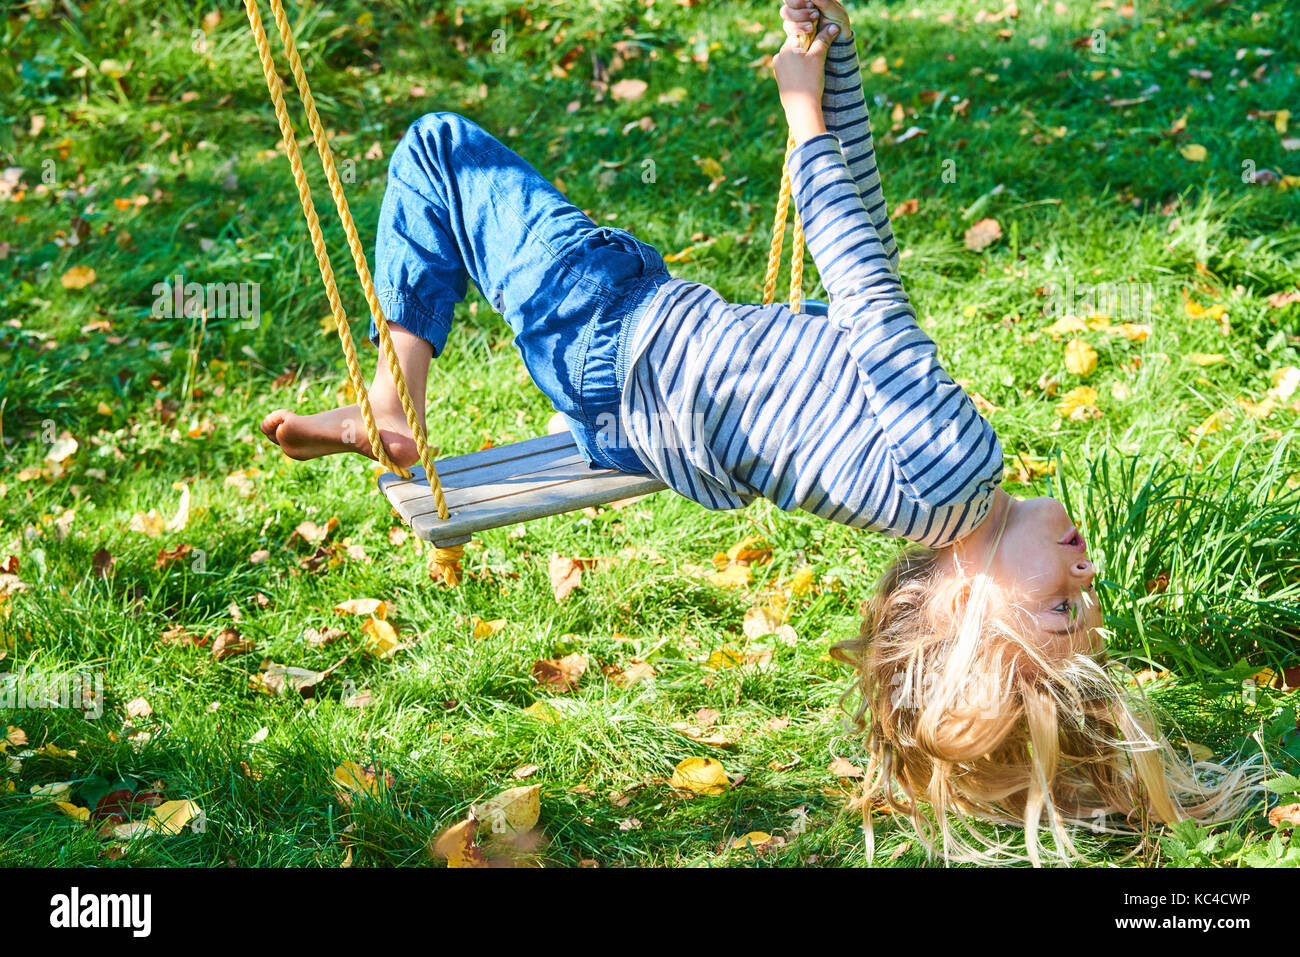 Kleines Kind blondes Mädchen Spaß haben auf einer Schaukel outdoor. Sommer Spielplatz. Mädchen Schwingen hoch. Junge Kind auf der Schaukel im Garten Stockfoto